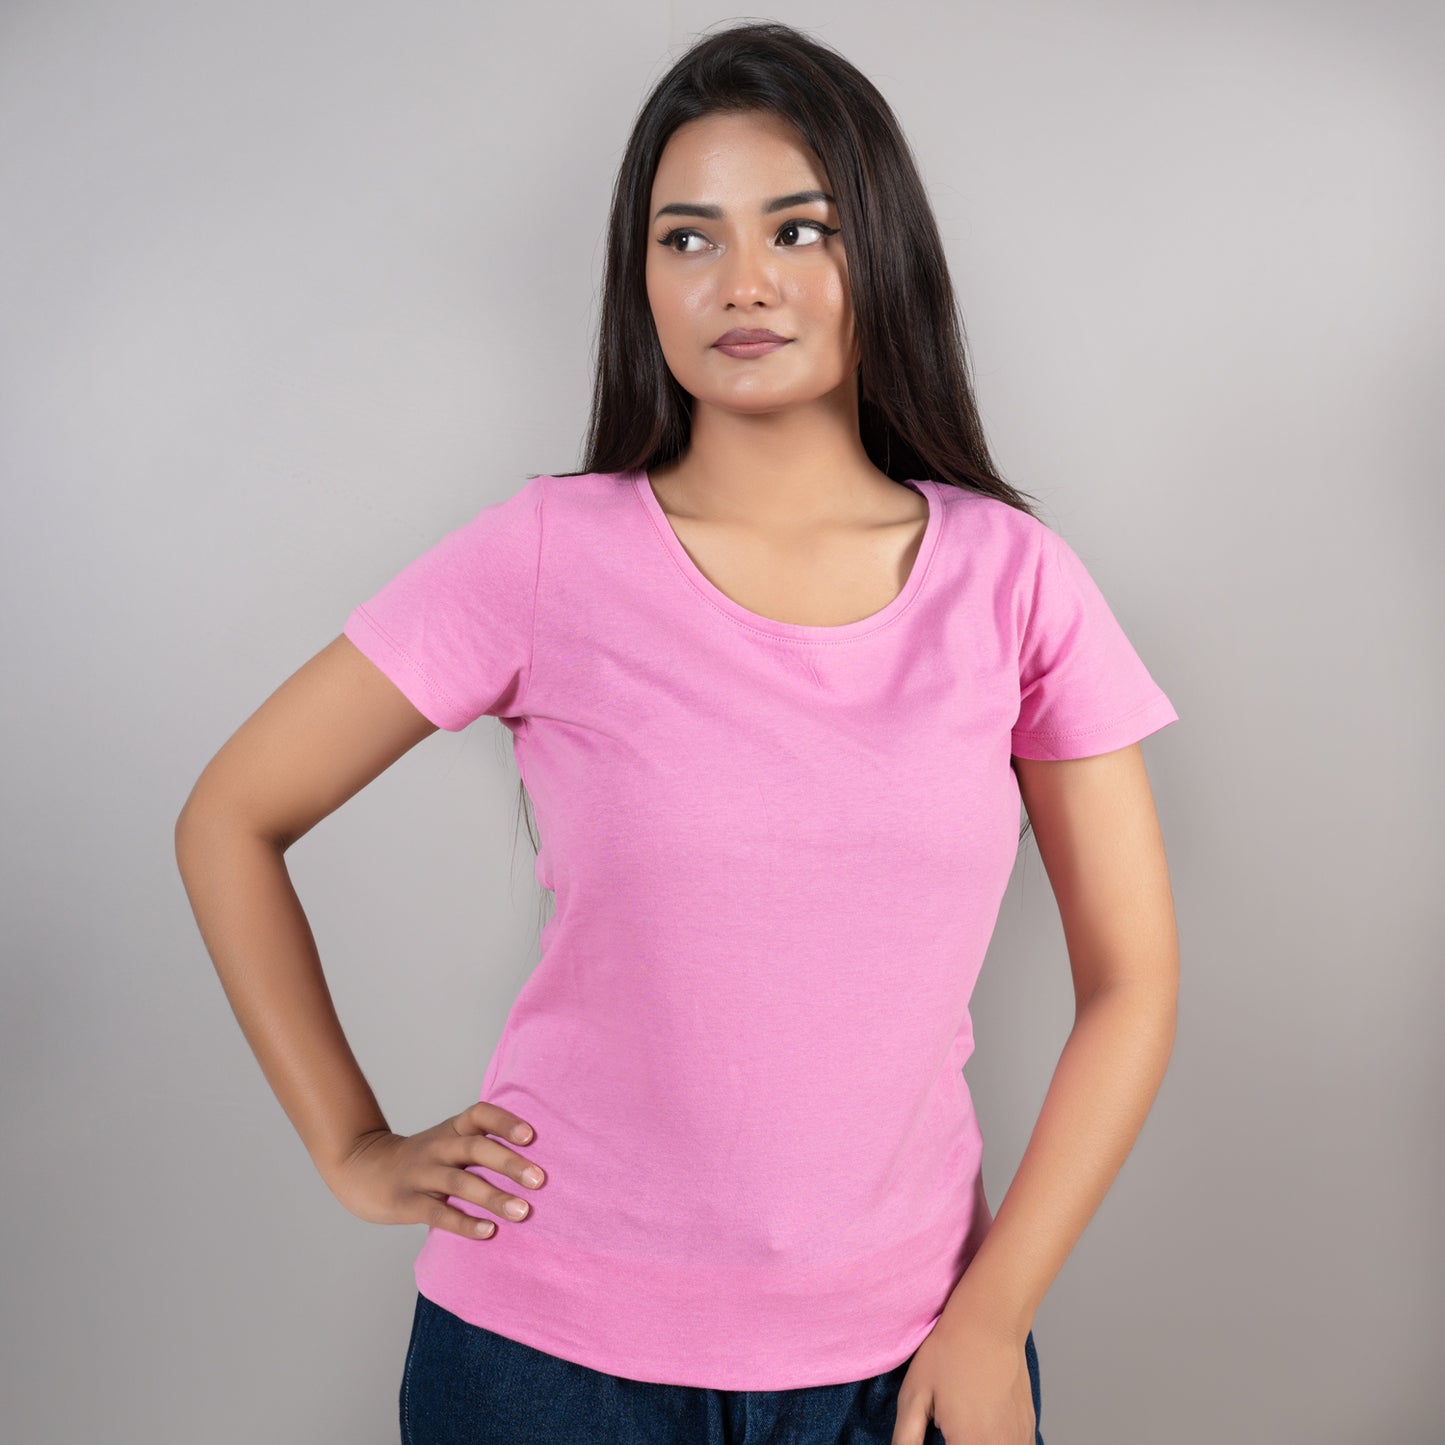 Womens Cotton T-Shirt Combo (Light Blue, Light Pink, Lime)